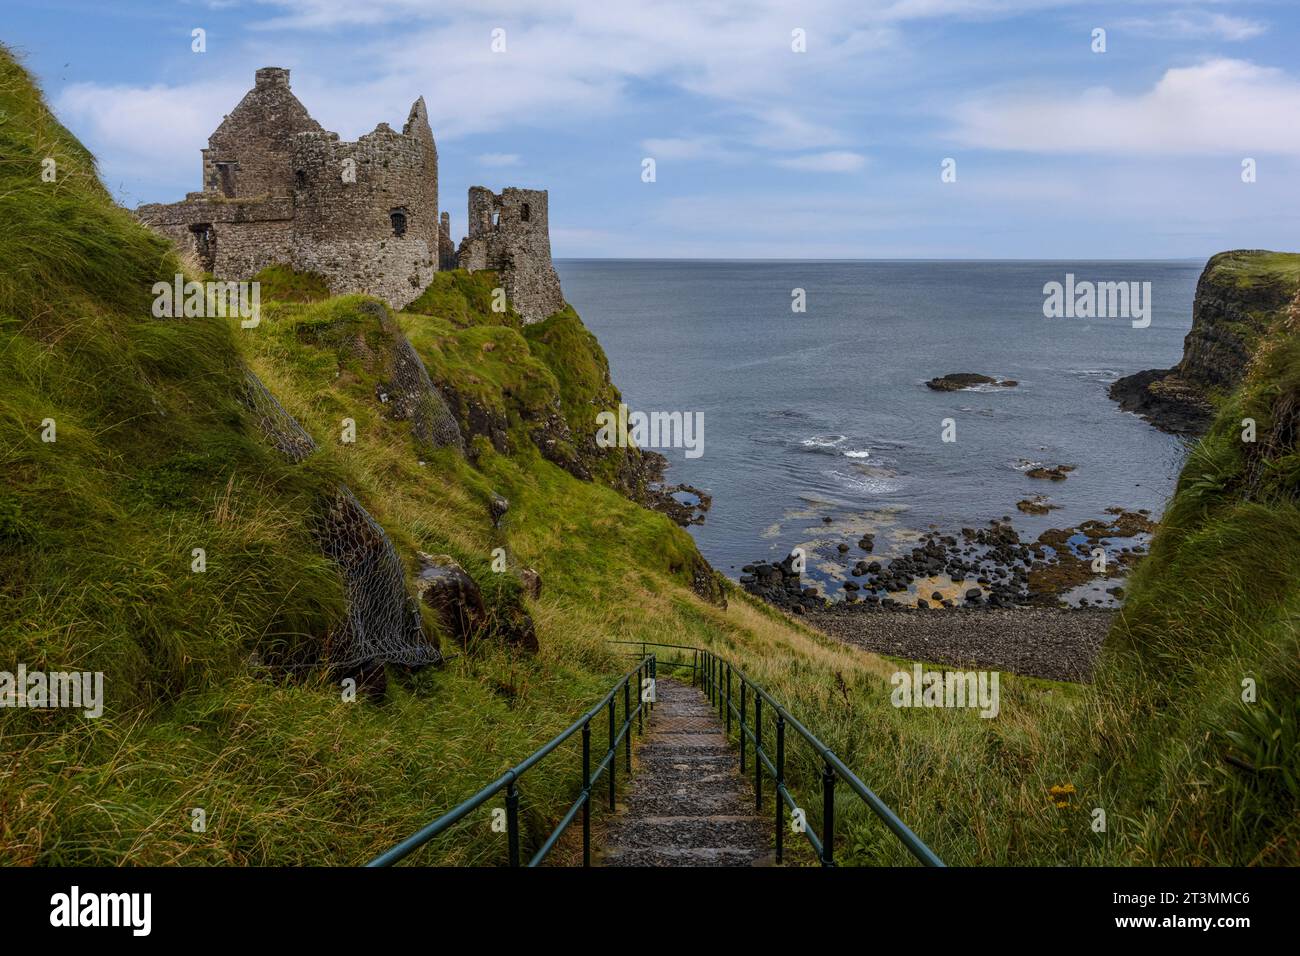 Le château de Dunluce est un château médiéval en ruine situé sur la côte d'Antrim en Irlande du Nord. Banque D'Images